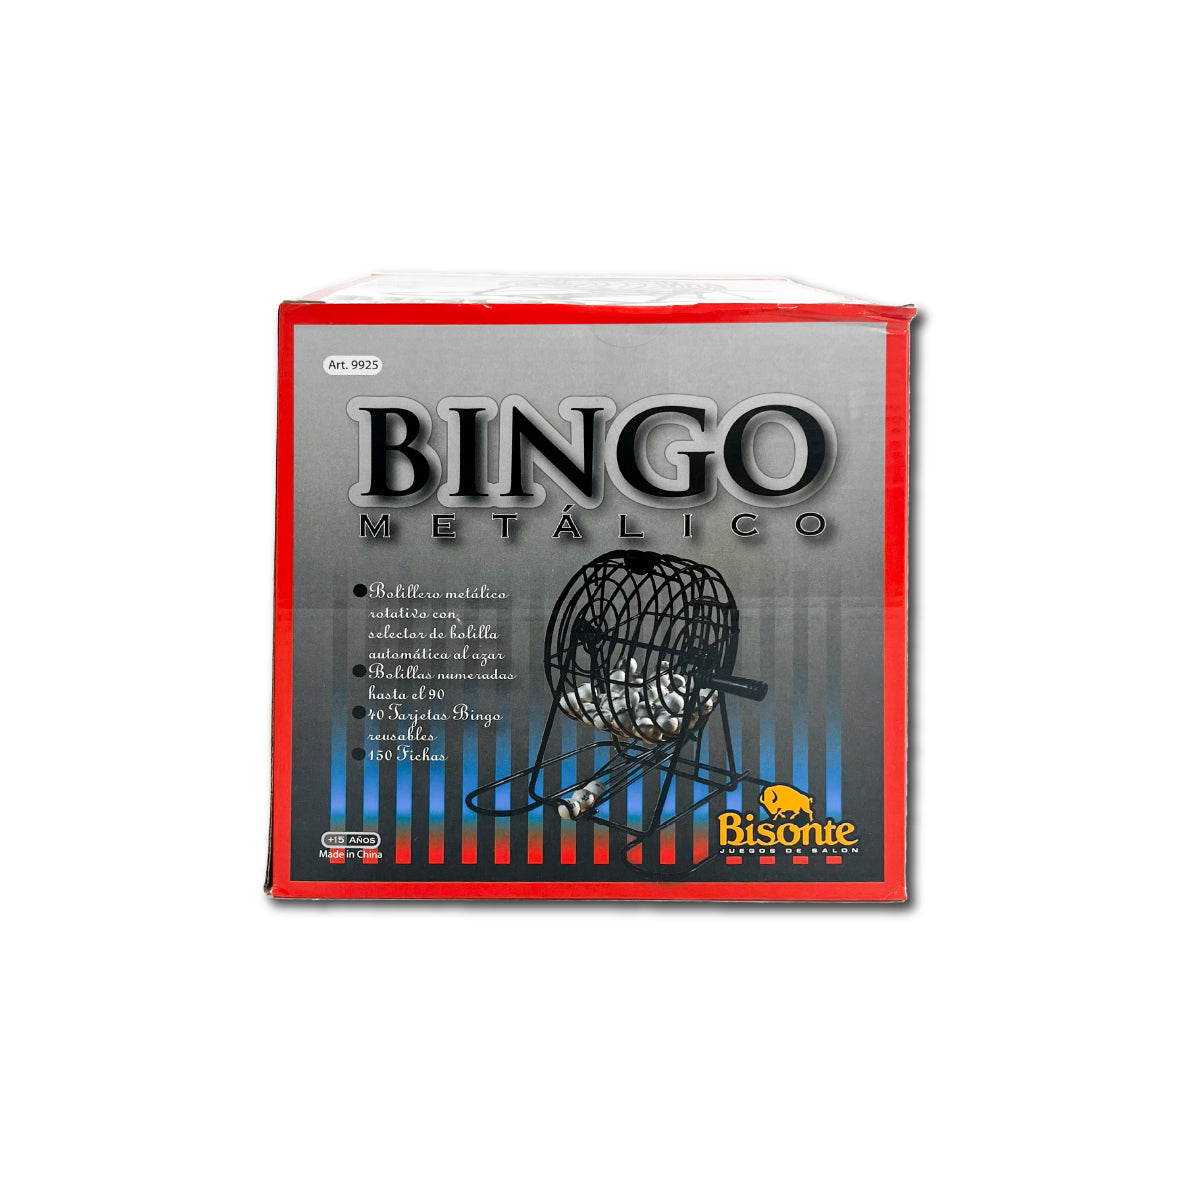 Juego de Mesa Bingo Metálico Con Bolillero Bisonte